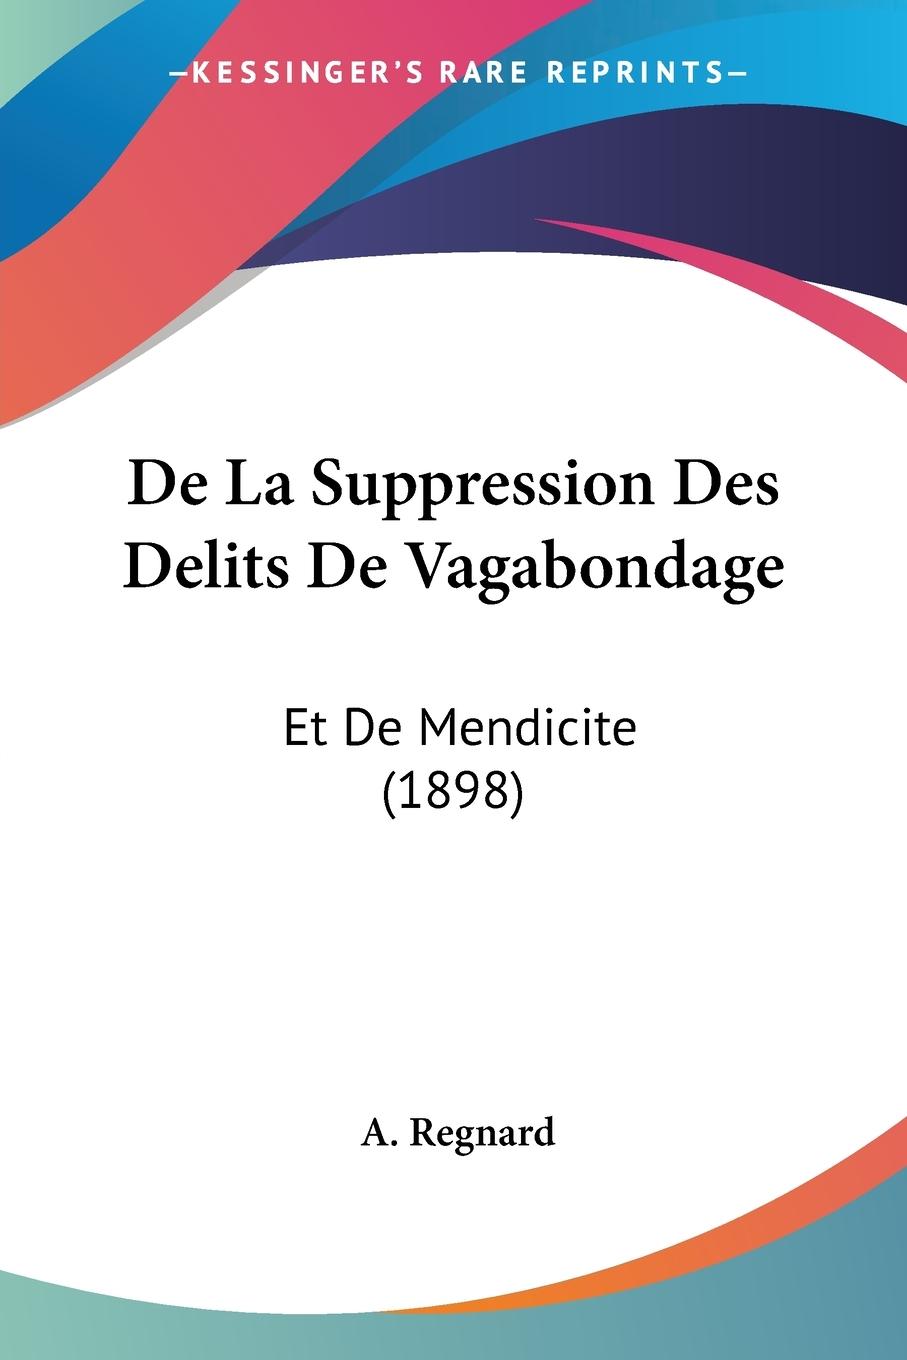 De La Suppression Des Delits De Vagabondage - Regnard, A.